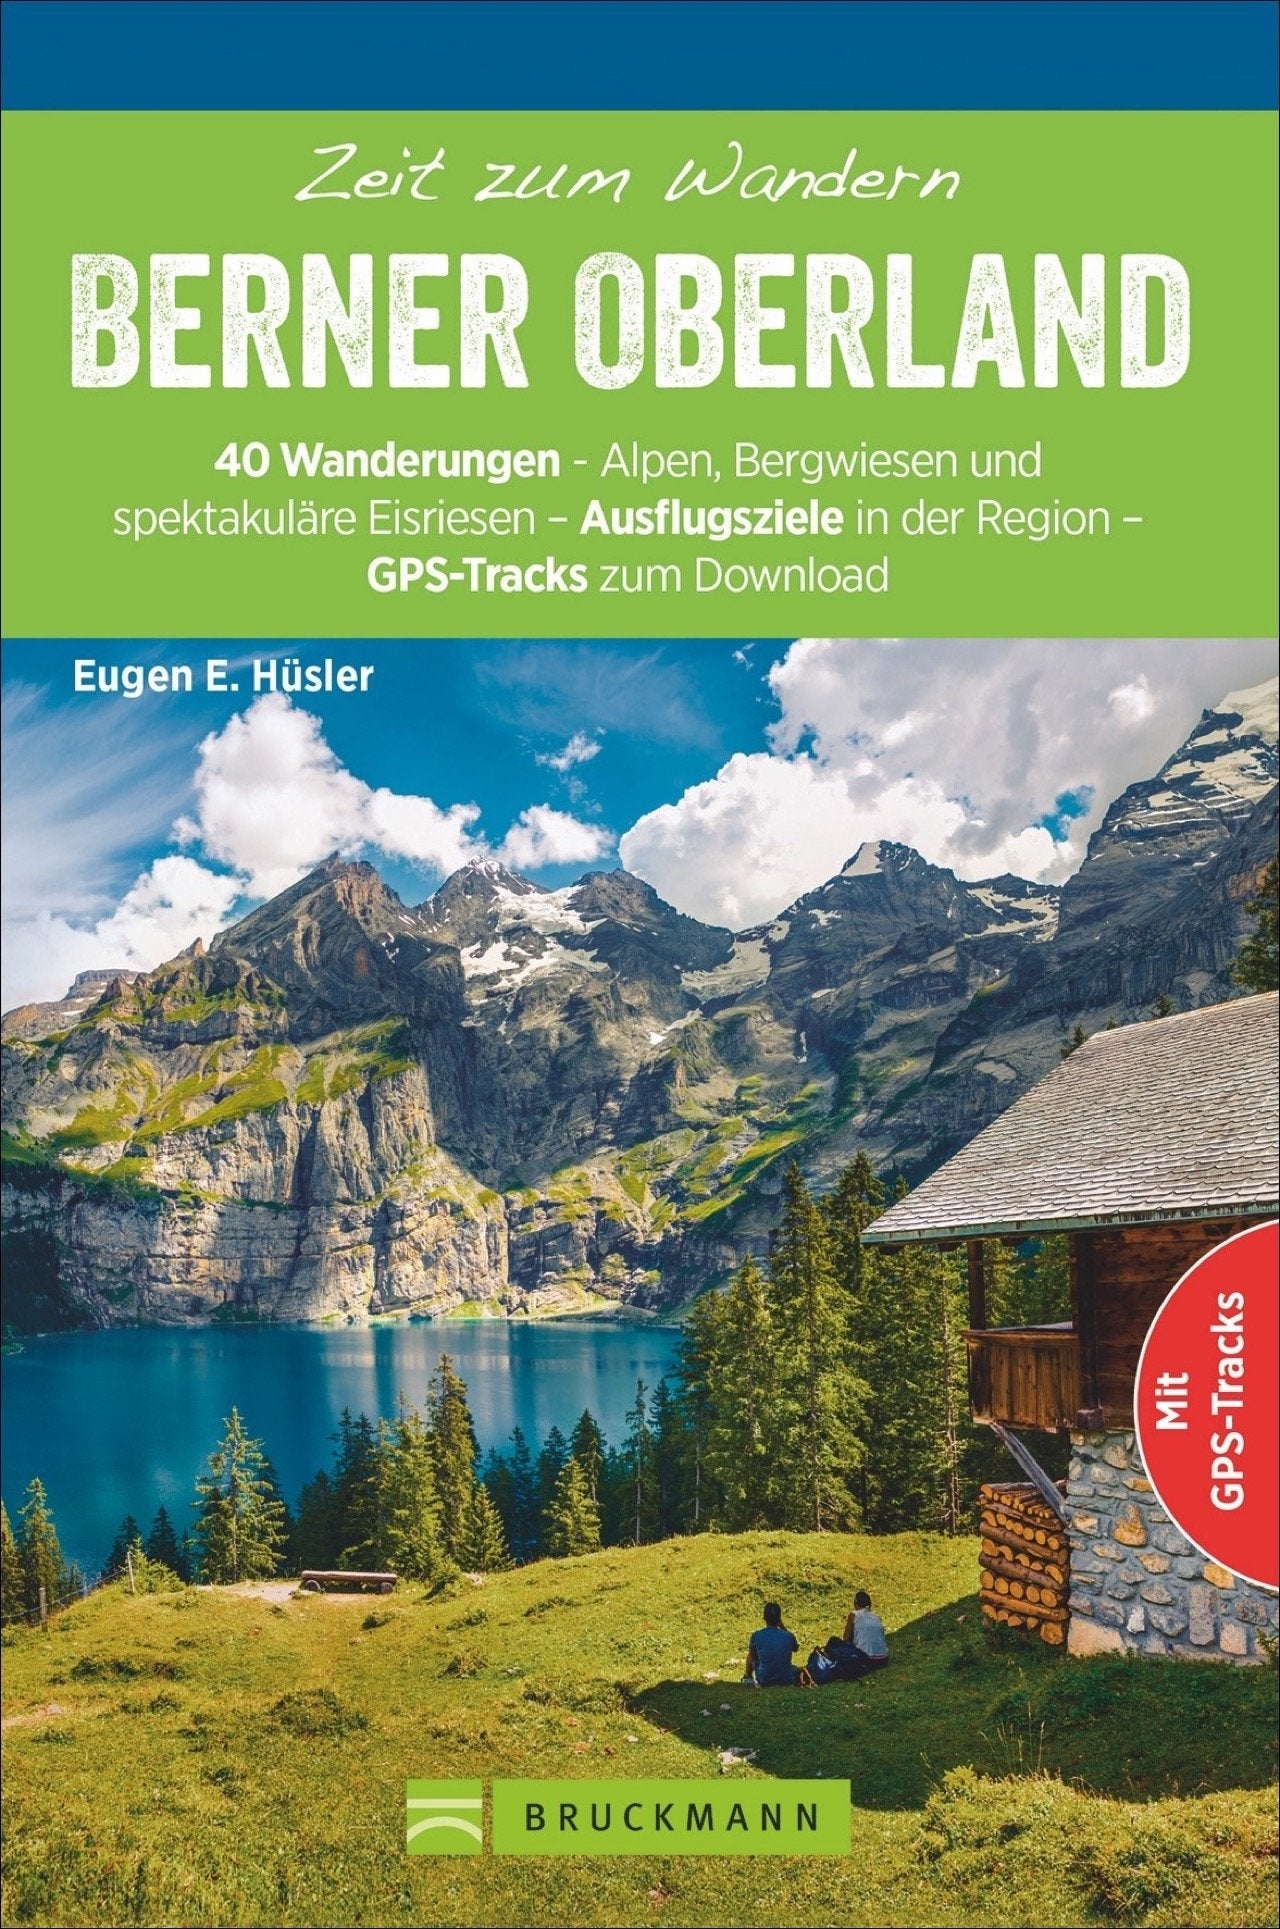 Time to Wander Bernese Oberland - 40 Wanderungen